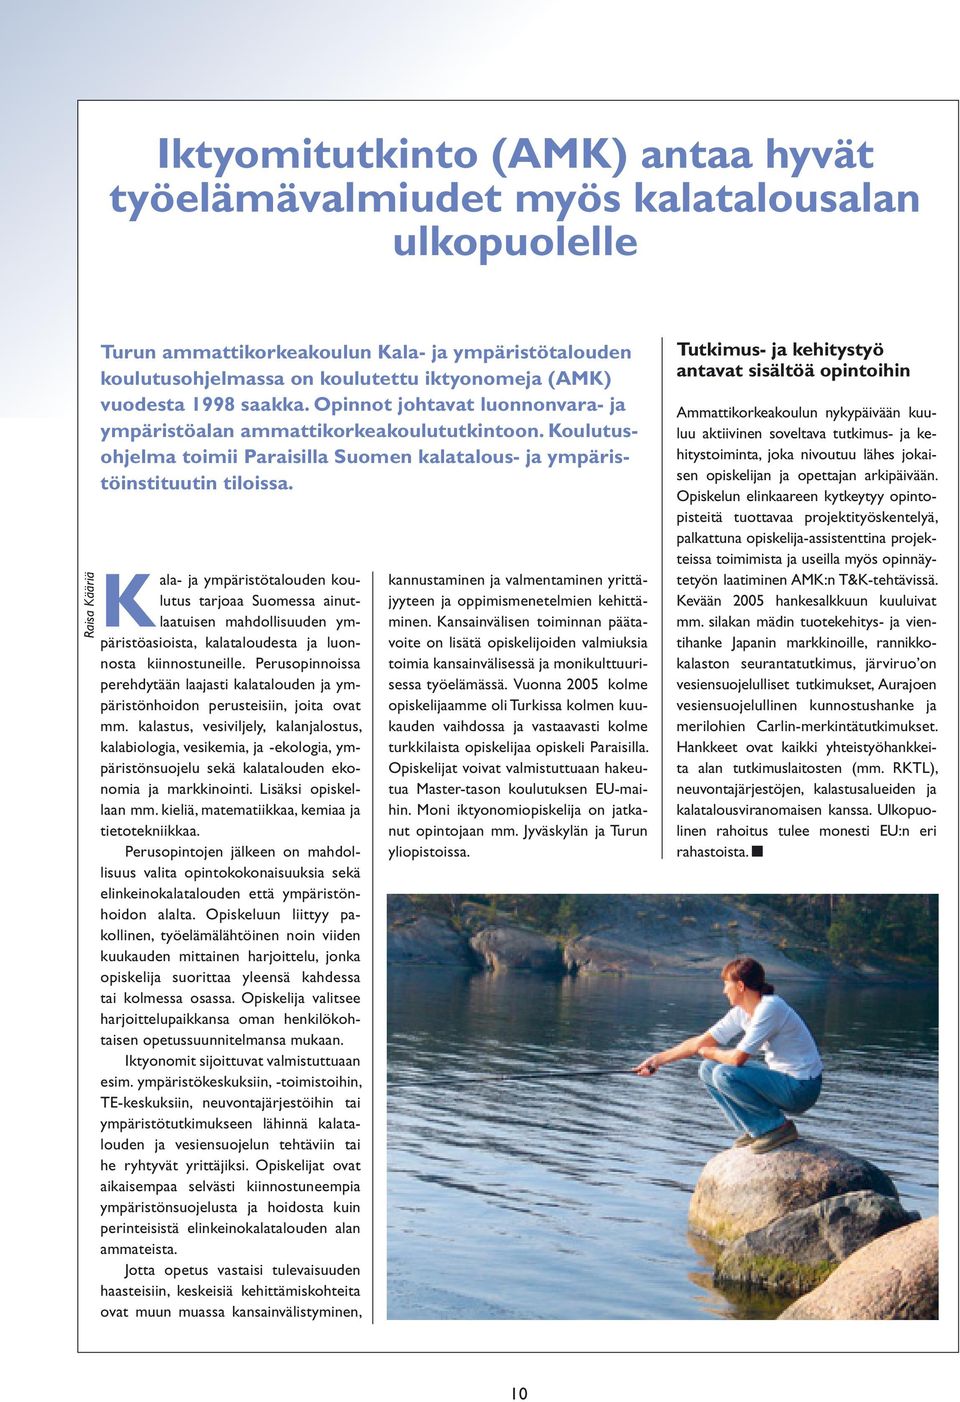 Kala- ja ympäristötalouden koulutus tarjoaa Suomessa ainutlaatuisen mahdollisuuden ympäristöasioista, kalataloudesta ja luonnosta kiinnostuneille.